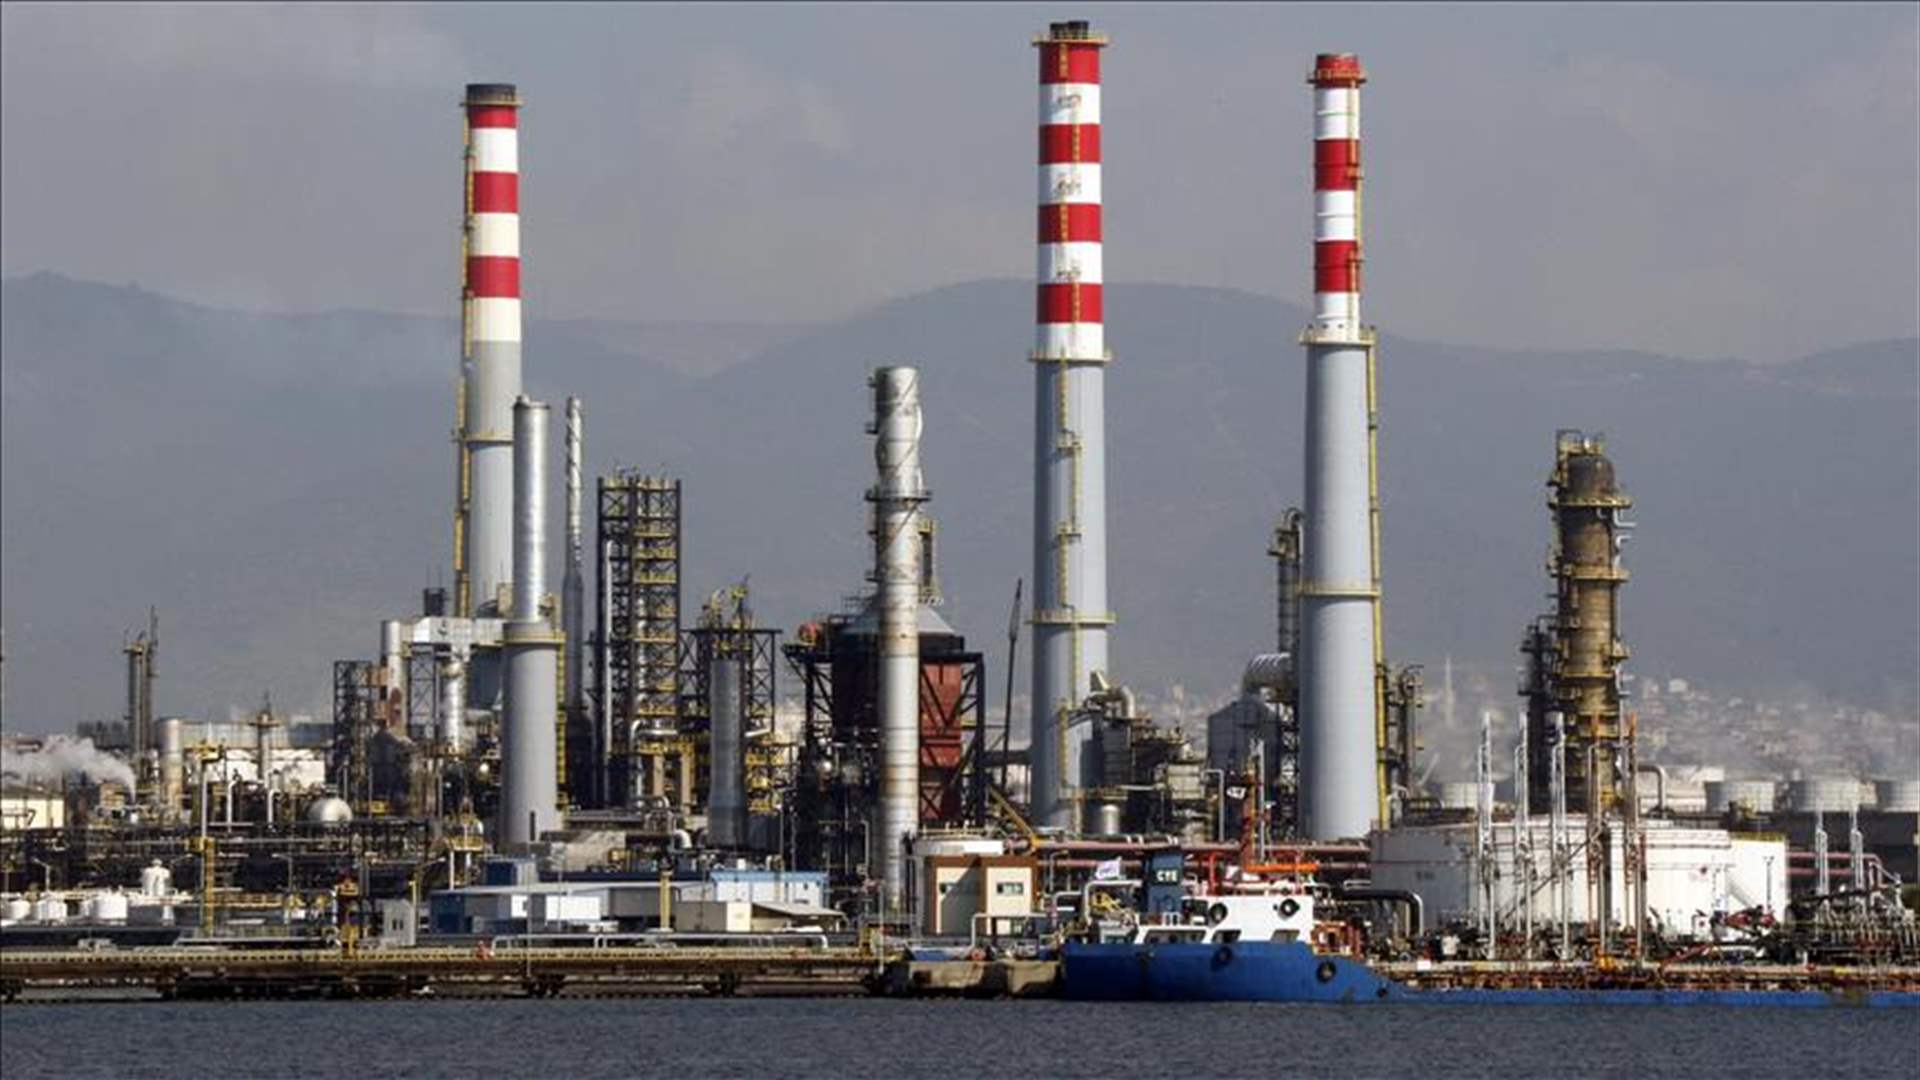 اتفاق بين قطر للطاقة وإكسليريت إنرجي لتوريد الغاز الطبيعي المسال لبنغلادش